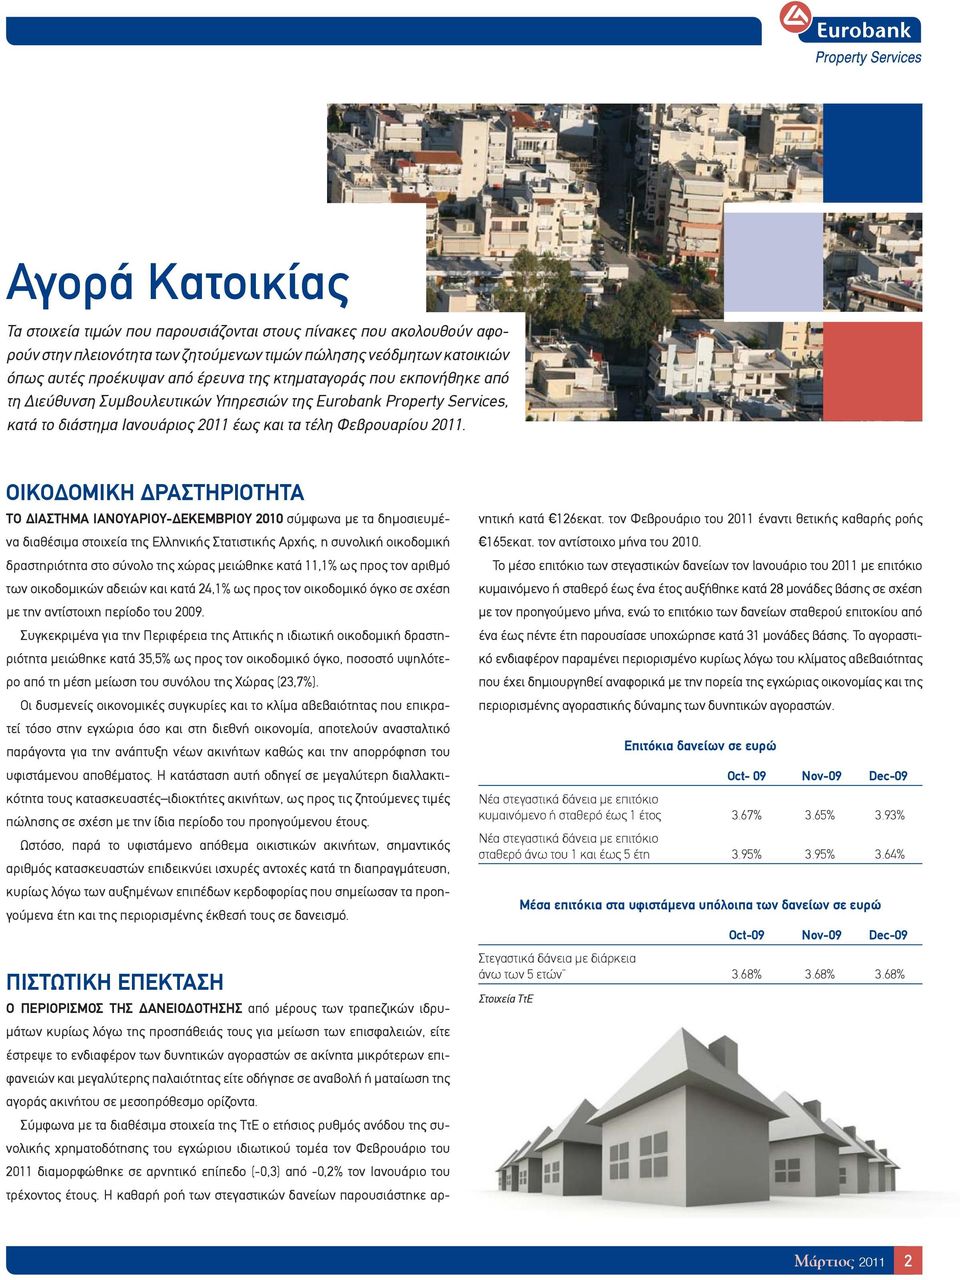 ΟΙΚΟΔΟΜΙΚΗ ΔΡΑΣΤΗΡΙΟΤΗΤΑ ΤΟ ΔΙΑΣΤΗΜΑ ΙΑΝΟΥΑΡΙΟΥ-ΔΕΚΕΜΒΡΙΟΥ 2010 σύμφωνα με τα δημοσιευμένα διαθέσιμα στοιχεία της Ελληνικής Στατιστικής Αρχής, η συνολική οικοδομική δραστηριότητα στο σύνολο της χώρας